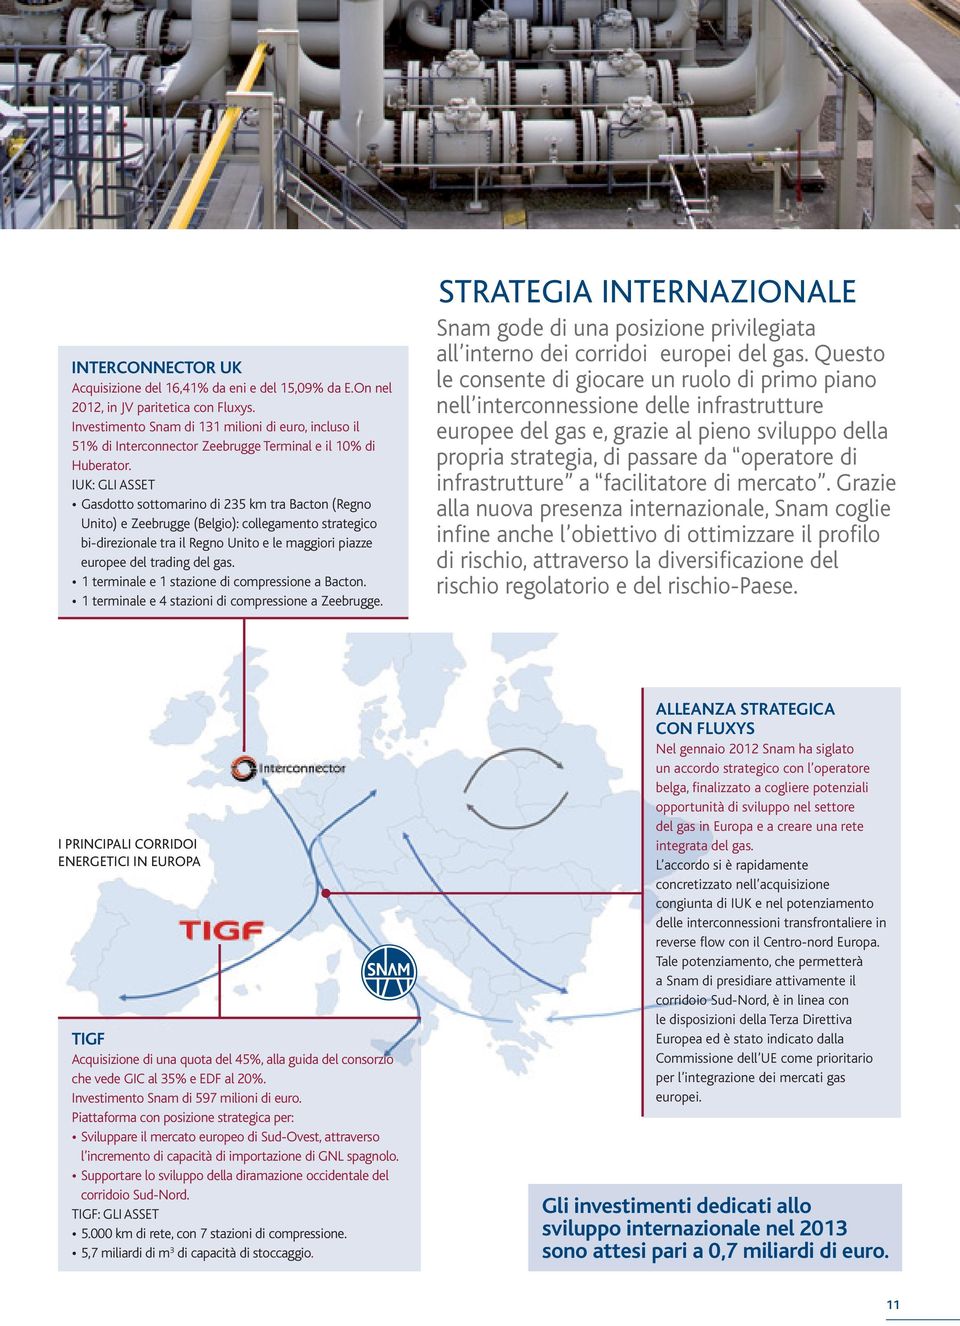 IUK: GLI ASSET Gasdotto sottomarino di 235 km tra Bacton (Regno Unito) e Zeebrugge (Belgio): collegamento strategico bi-direzionale tra il Regno Unito e le maggiori piazze europee del trading del gas.